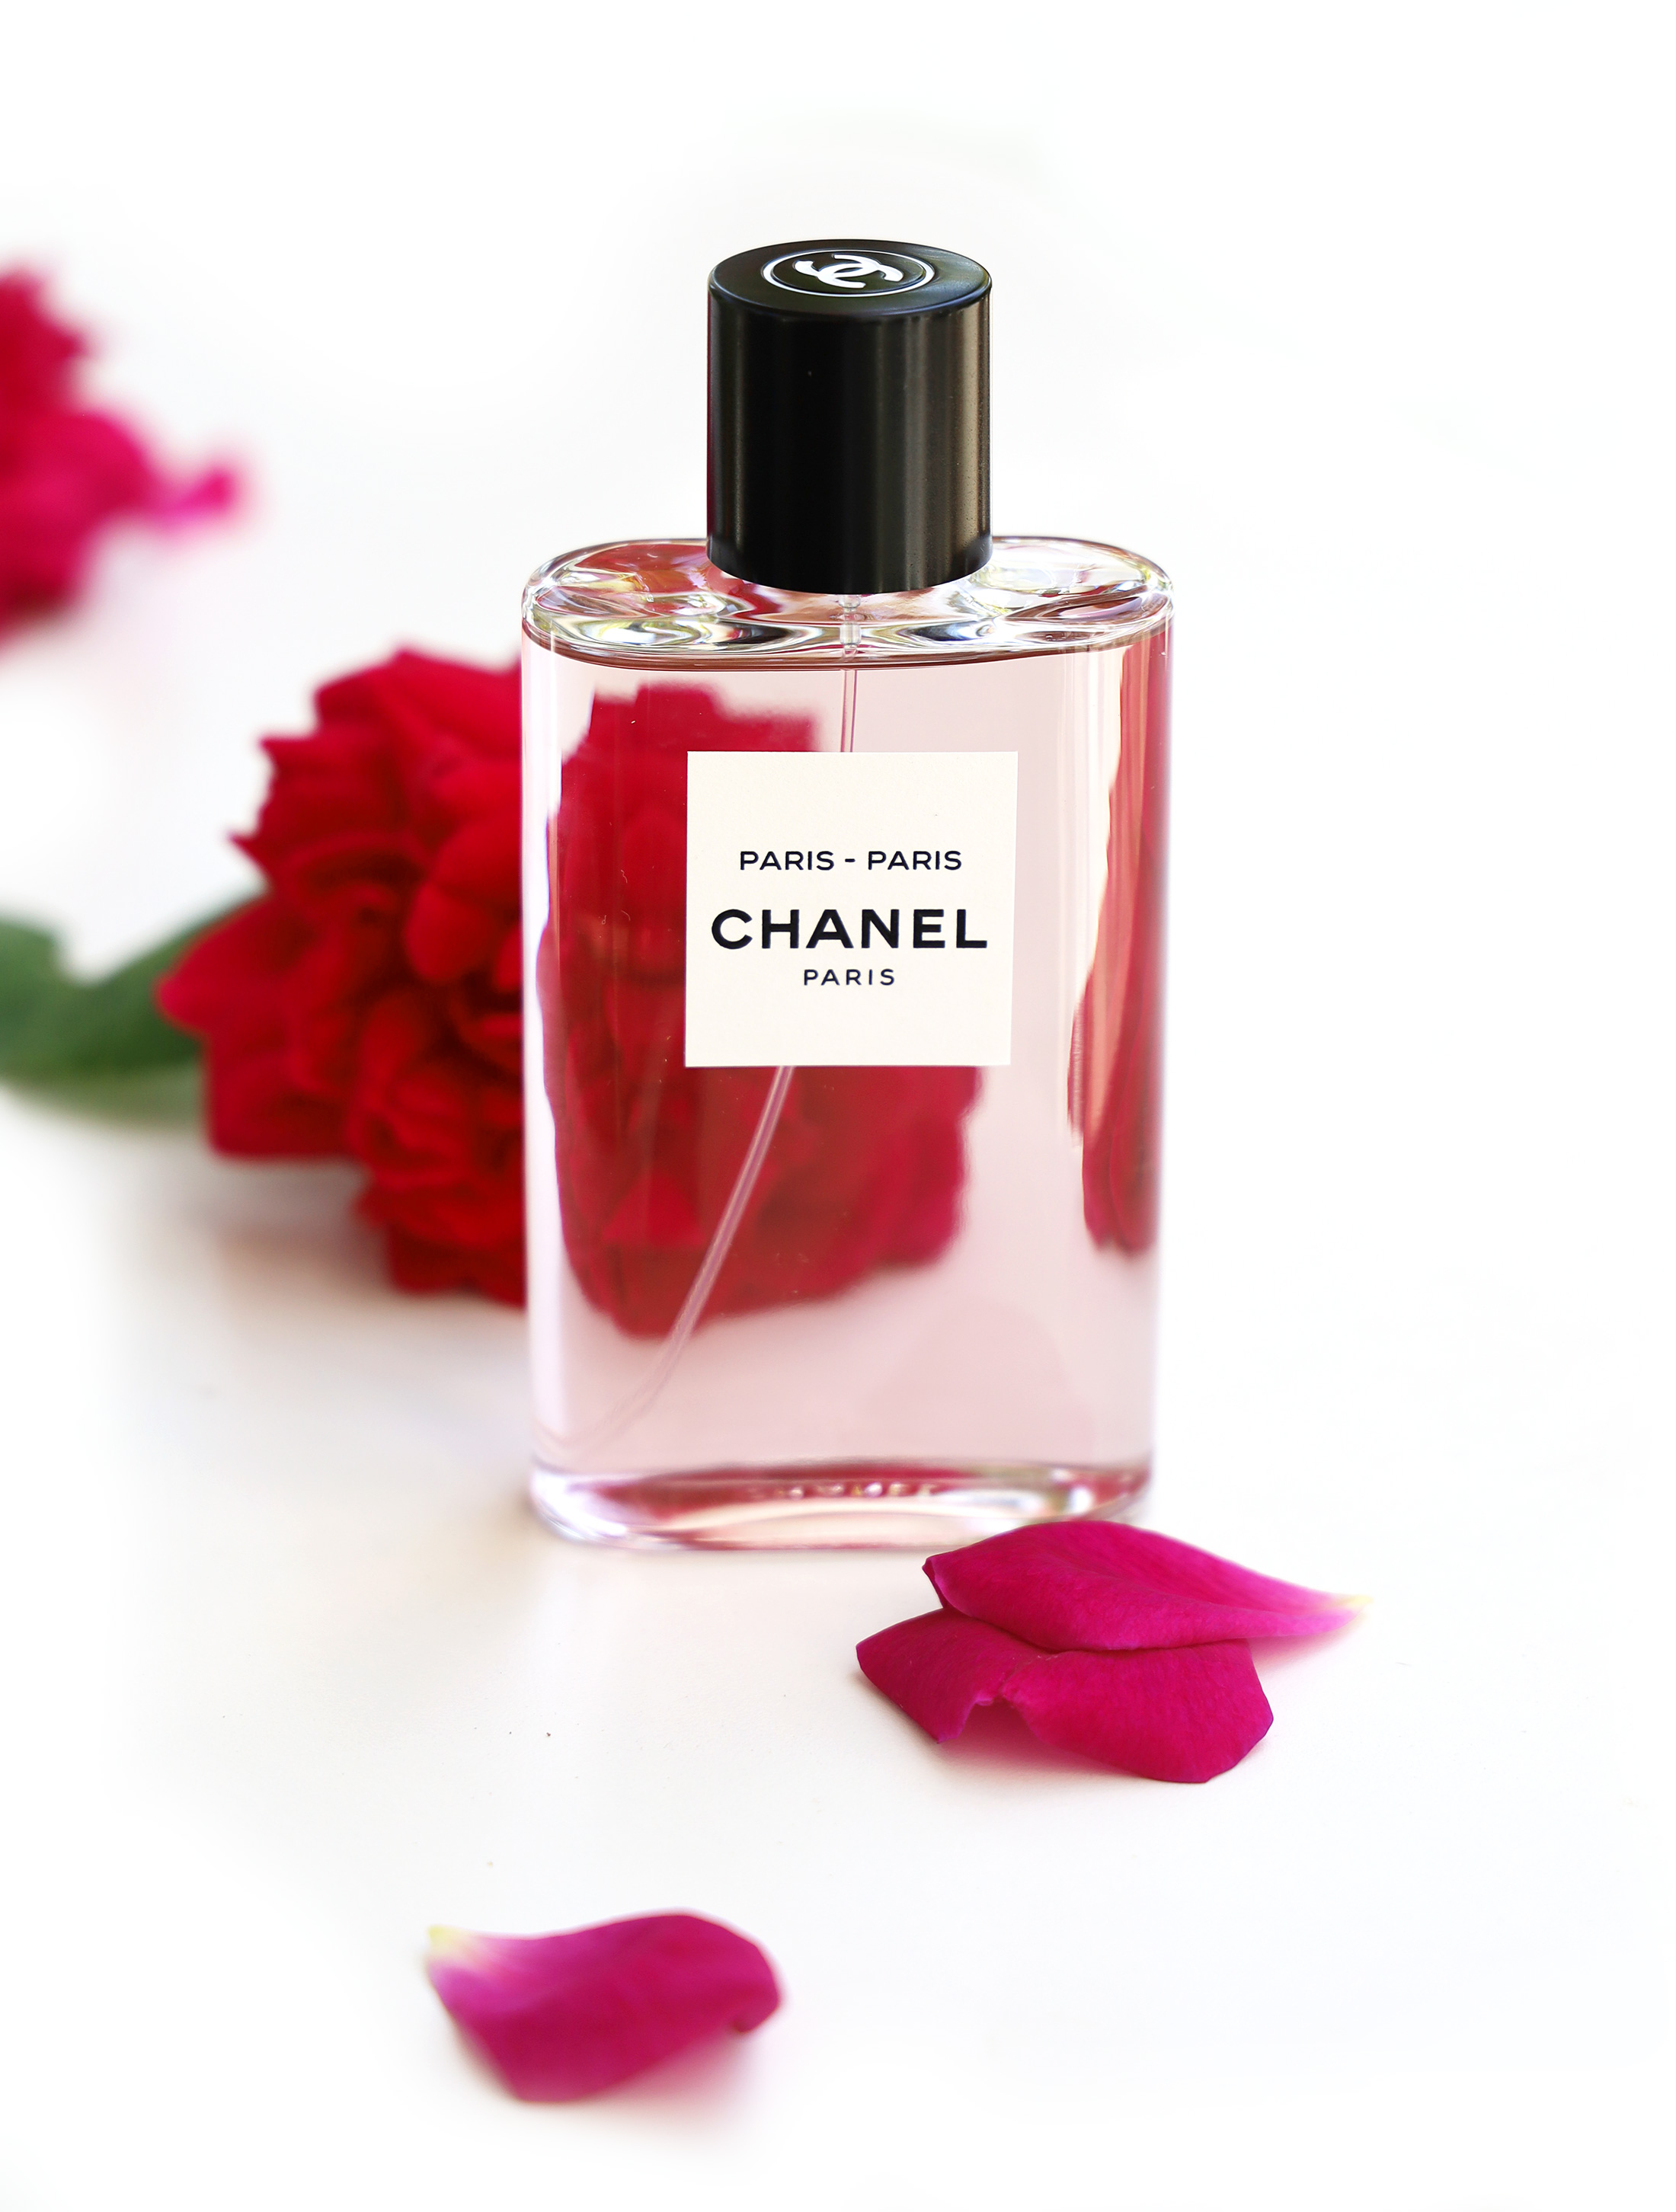 Frivolity in a Serious Genre – Chanel Paris - Paris ~ Fragrance